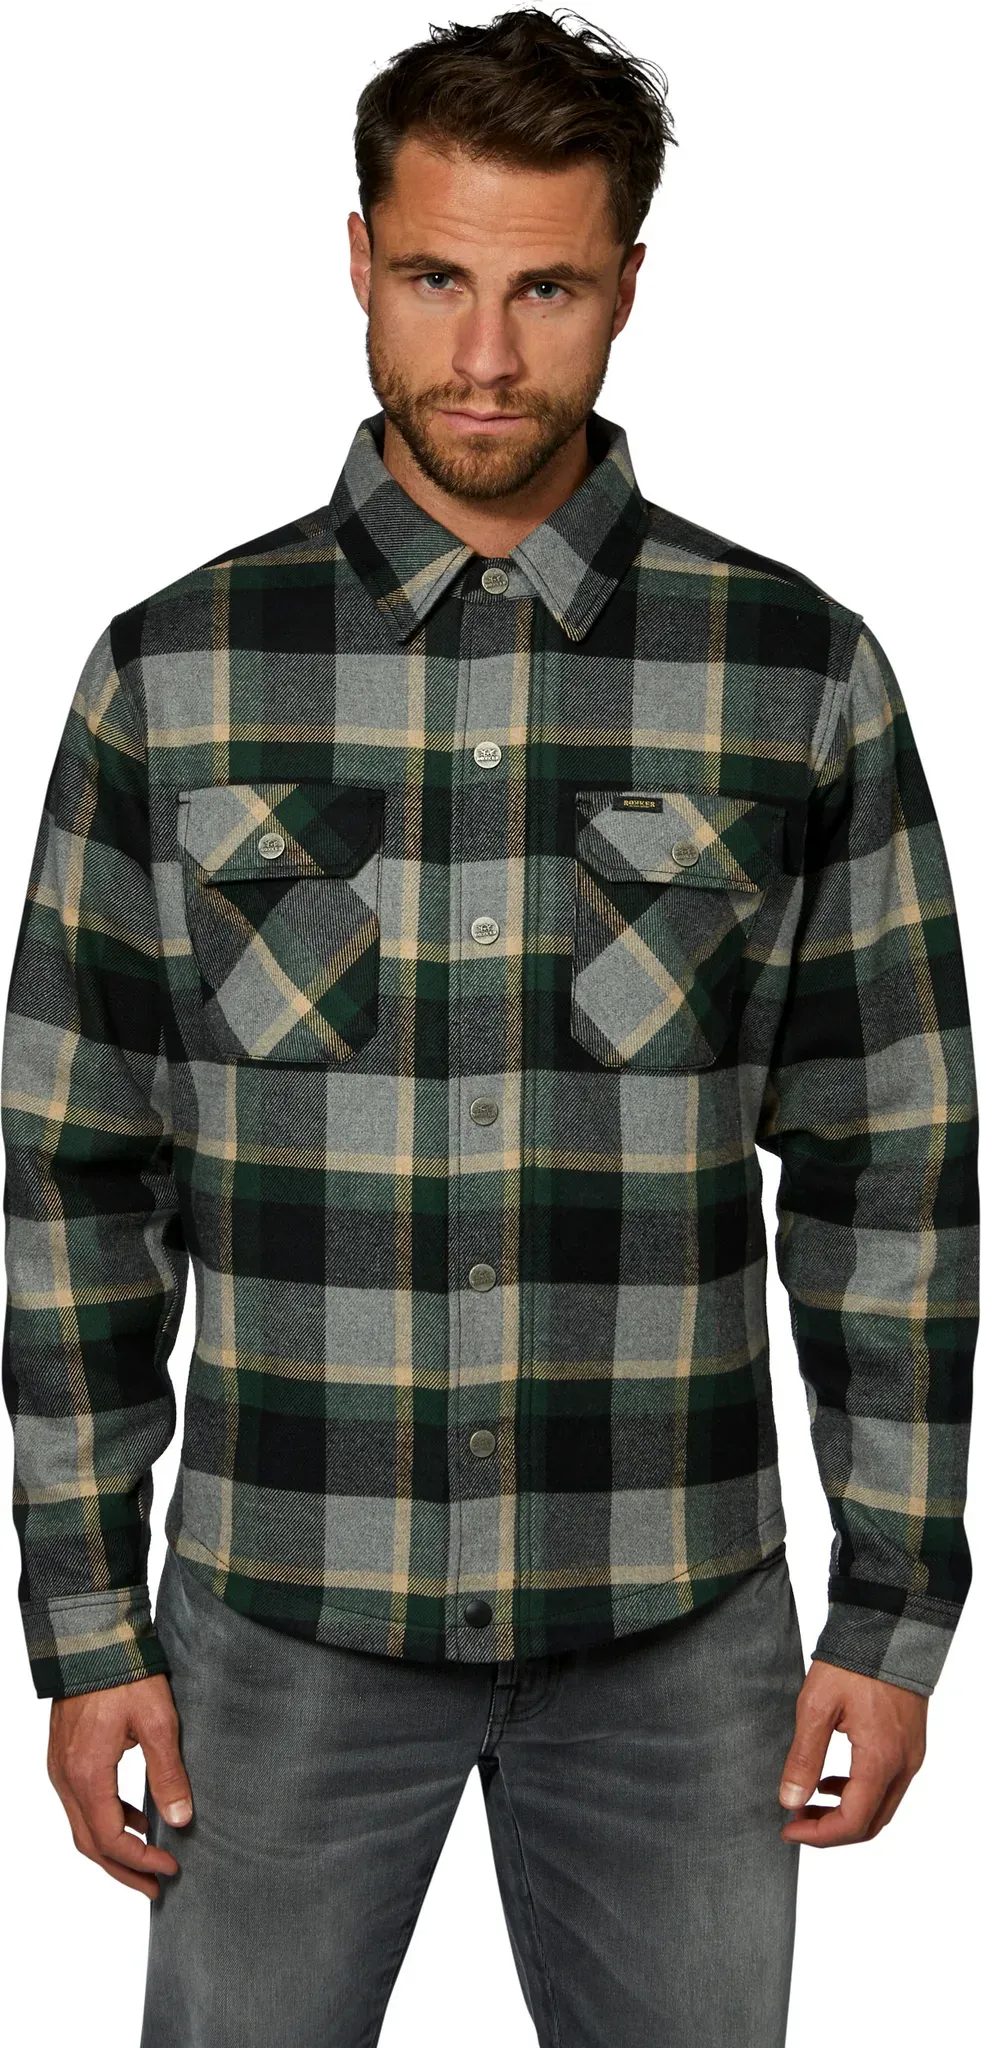 Rokker Memphis Green, chemise/veste textile - Gris/Noir/Vert Foncé - L